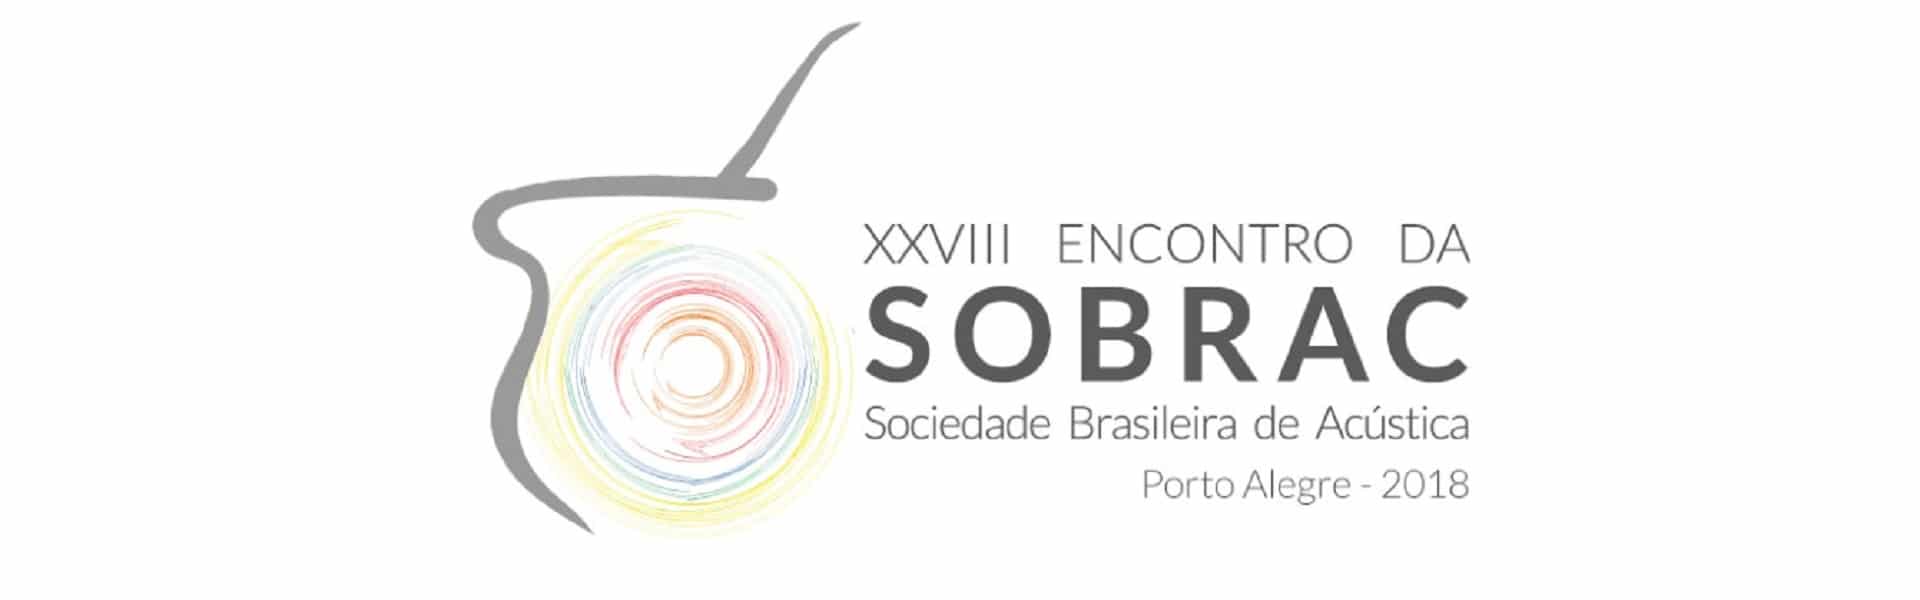 28° Encontro da Sobrac recebe inscrições com desconto até 31 de maio